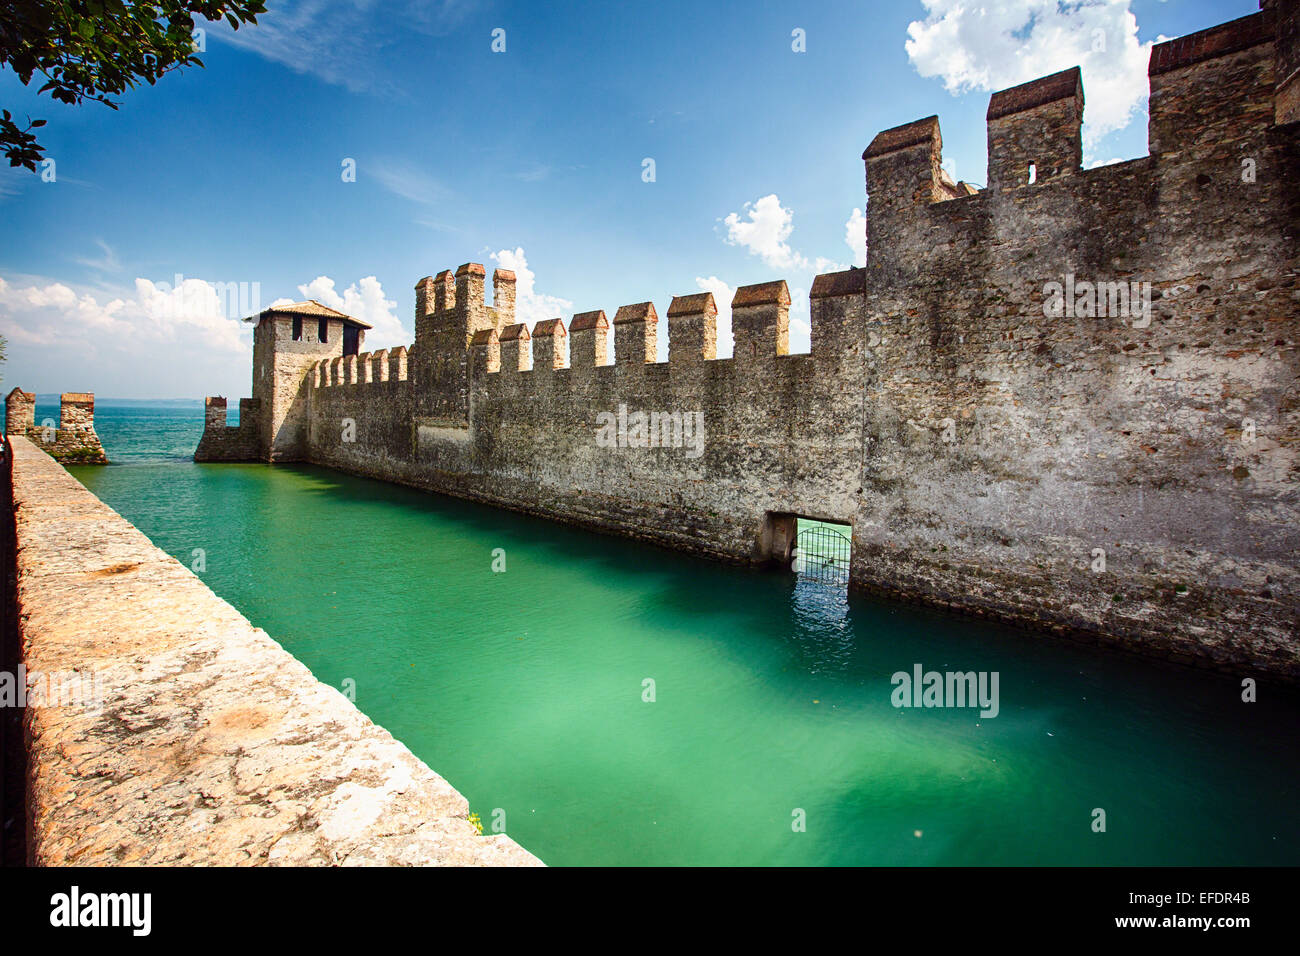 Basso Angolo di visione di un castello nel lago, Castello Scaligero, Sirmione sul Lago di Garda, Lombardia, Italia Foto Stock